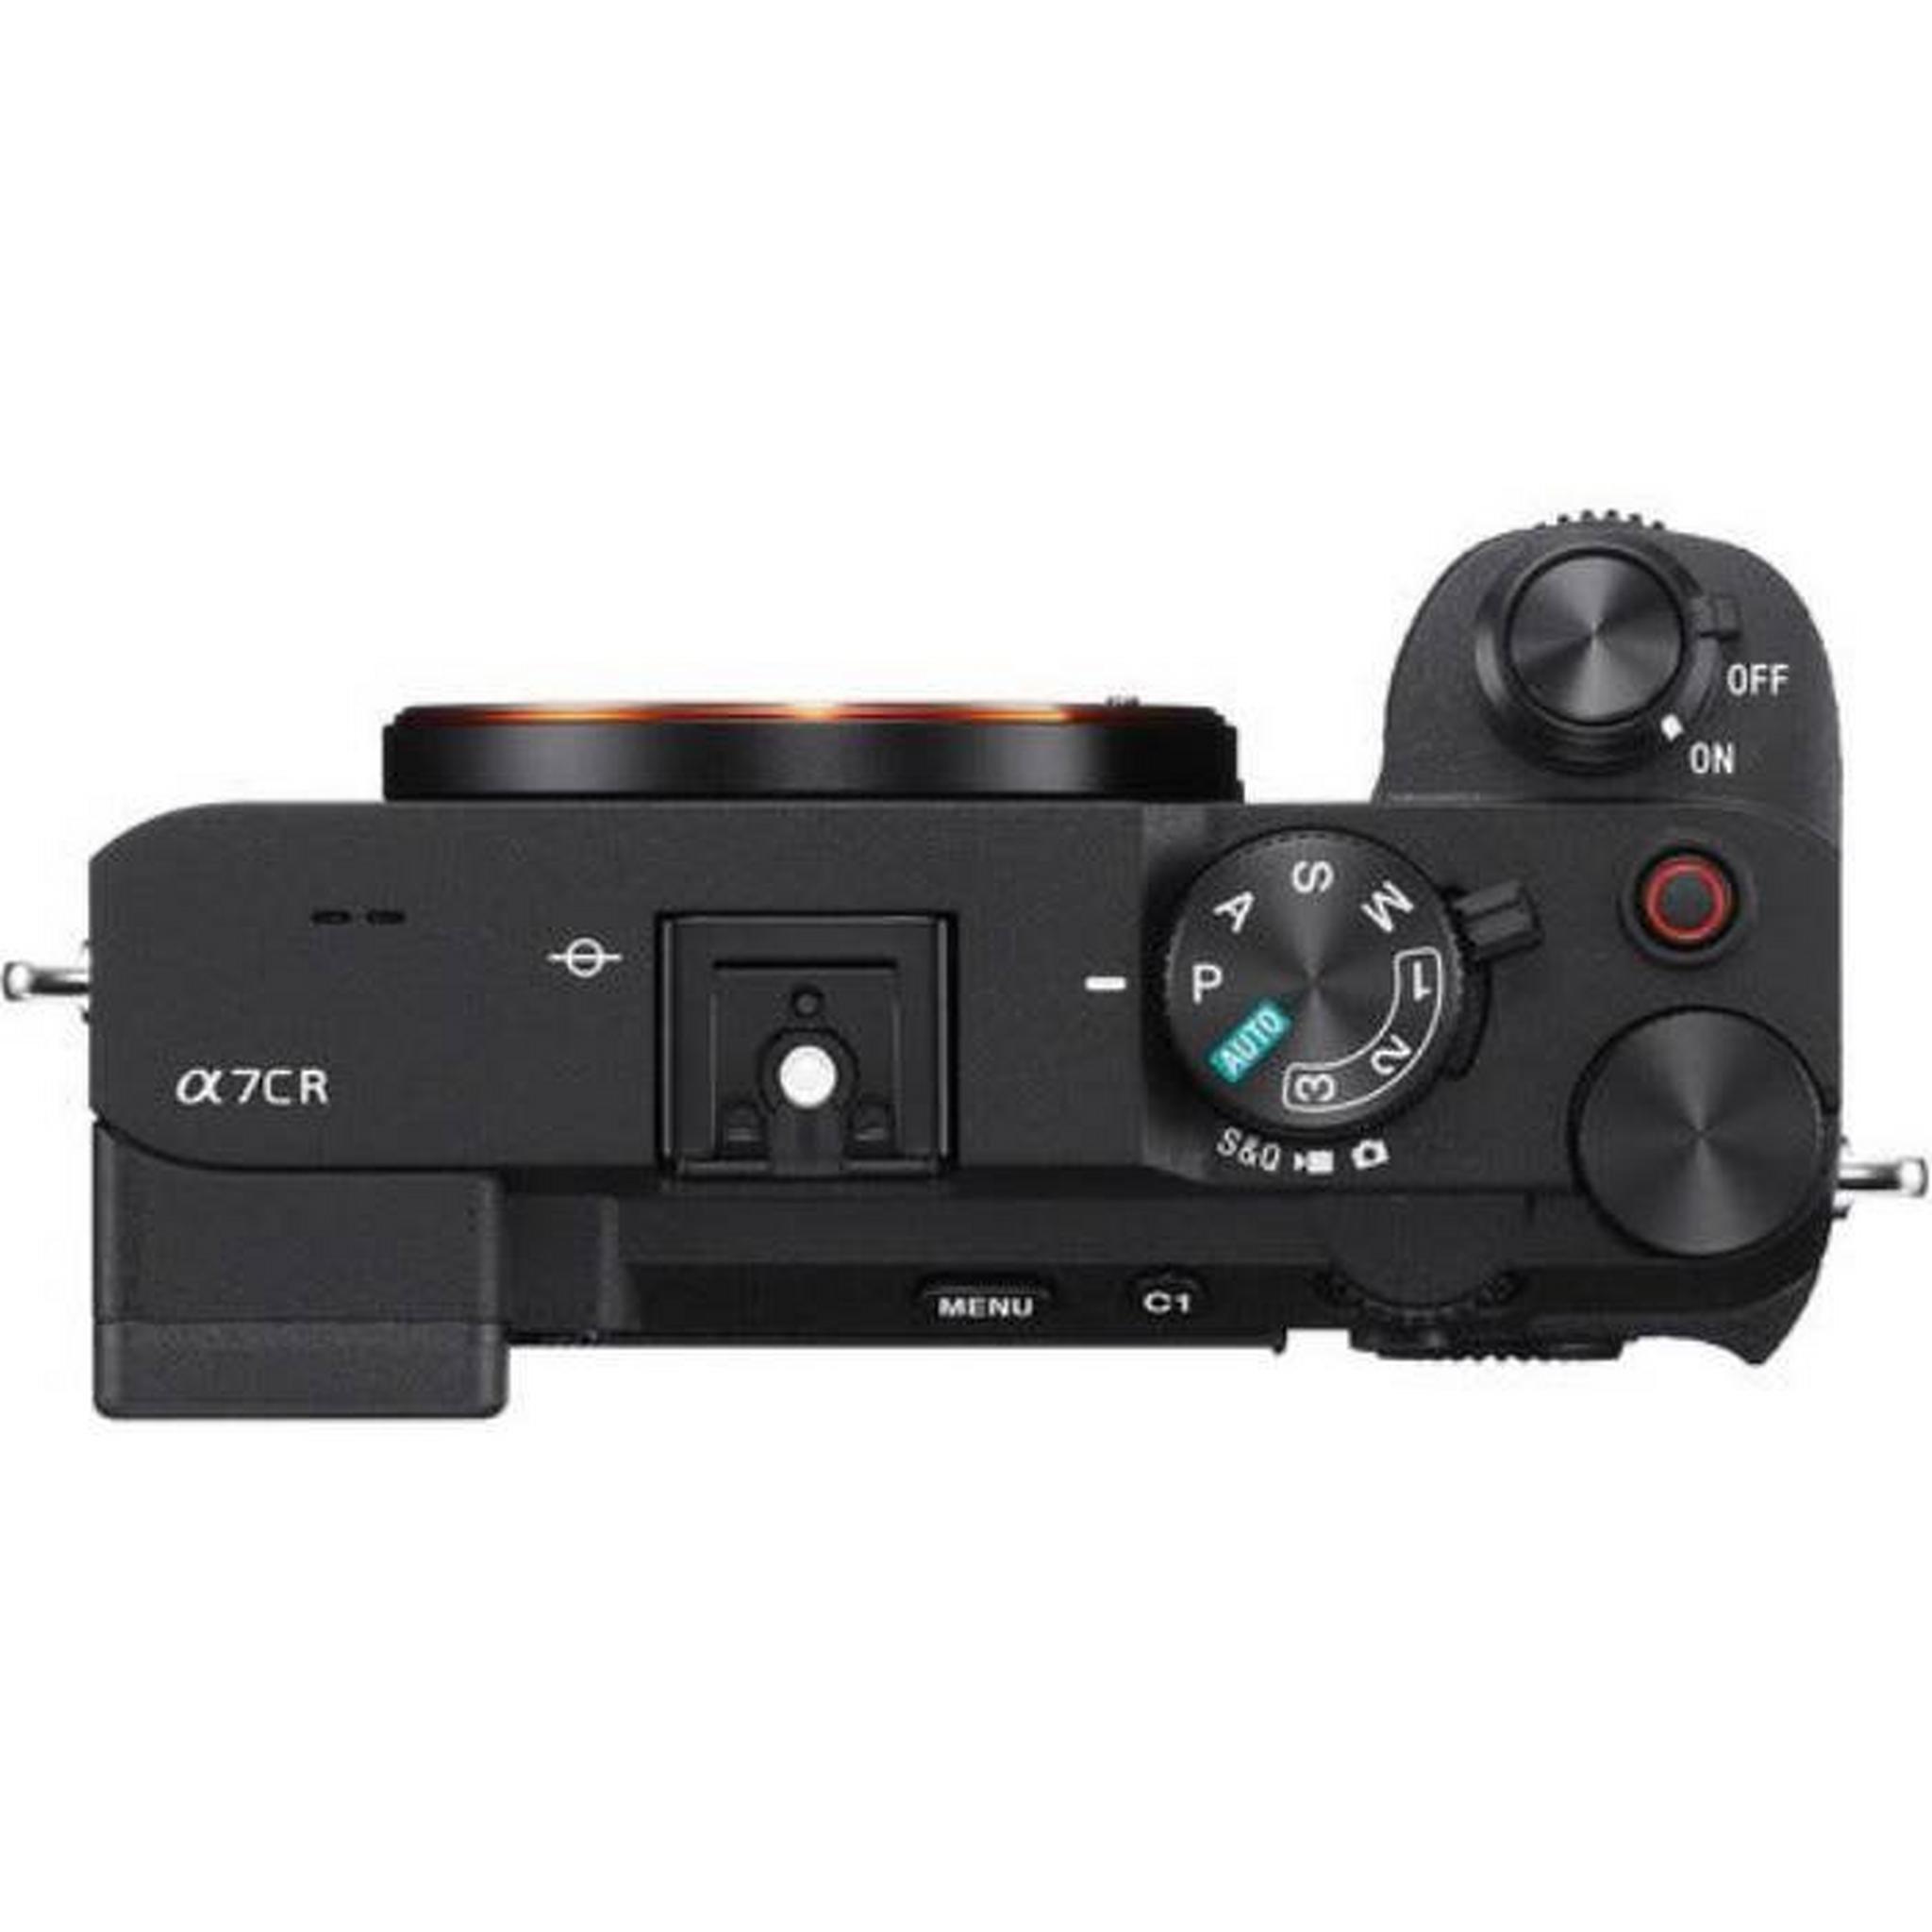 كاميرا ألفا 7 سي ار من سوني، بدون مرآة، (هيكل)، ILCE-7CR/BQ AF1 – أسود